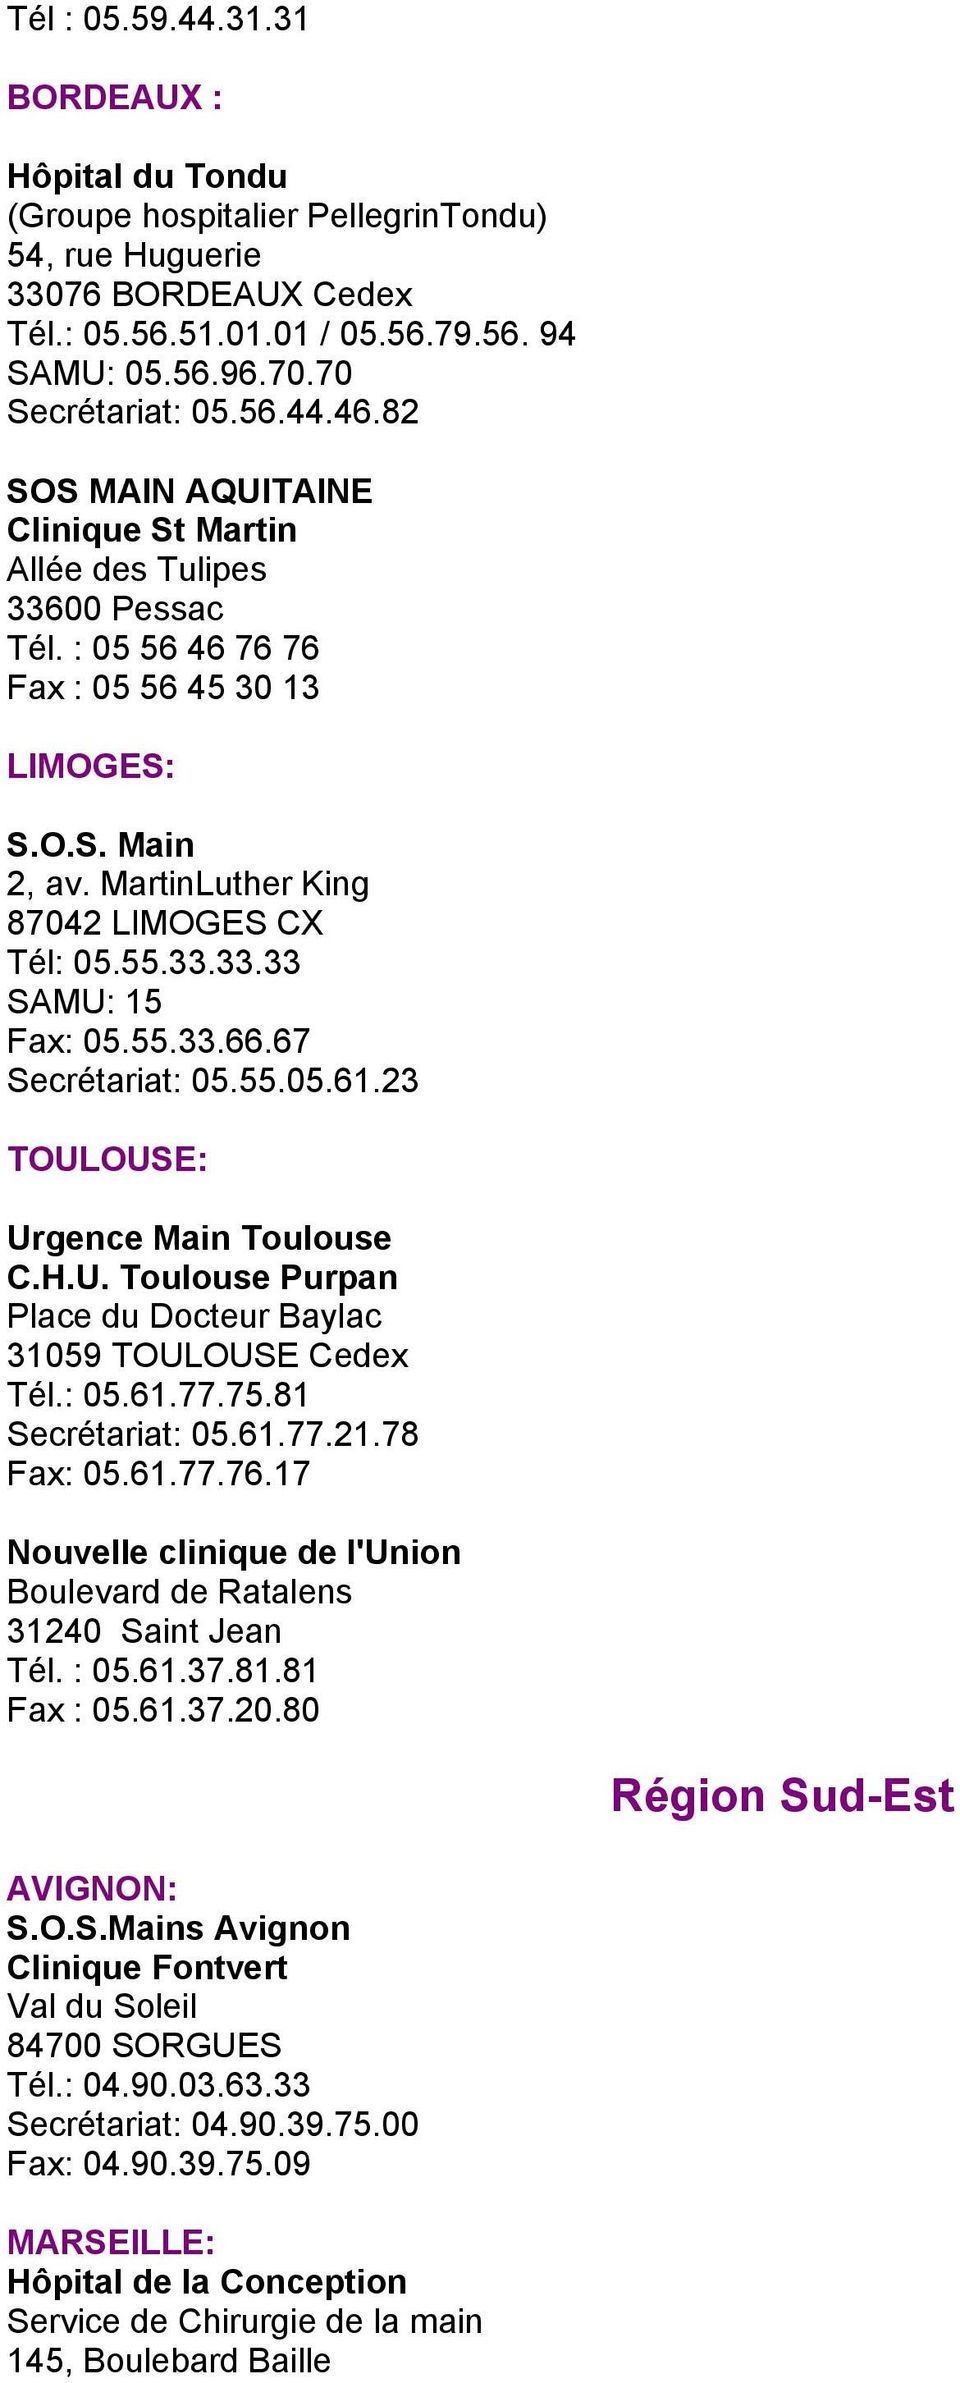 33.33.33 SAMU: 15 Fax: 05.55.33.66.67 Secrétariat: 05.55.05.61.23 TOULOUSE: Urgence Main Toulouse C.H.U. Toulouse Purpan Place du Docteur Baylac 31059 TOULOUSE Cedex Tél.: 05.61.77.75.